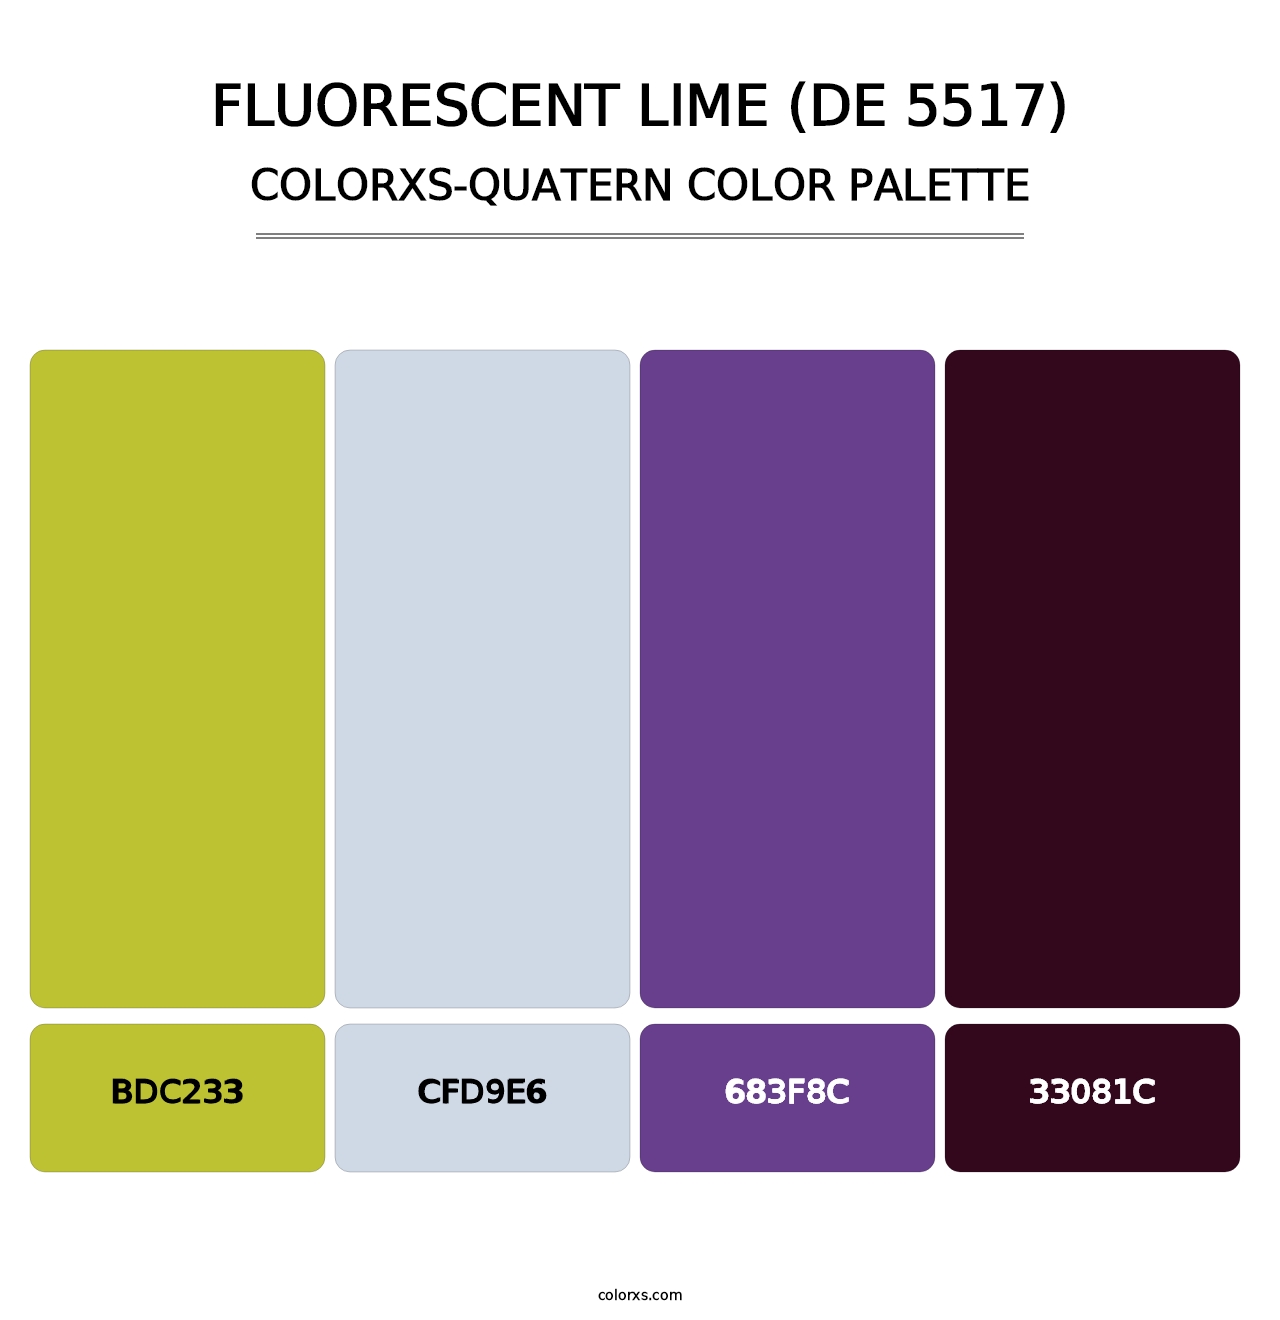 Fluorescent Lime (DE 5517) - Colorxs Quatern Palette